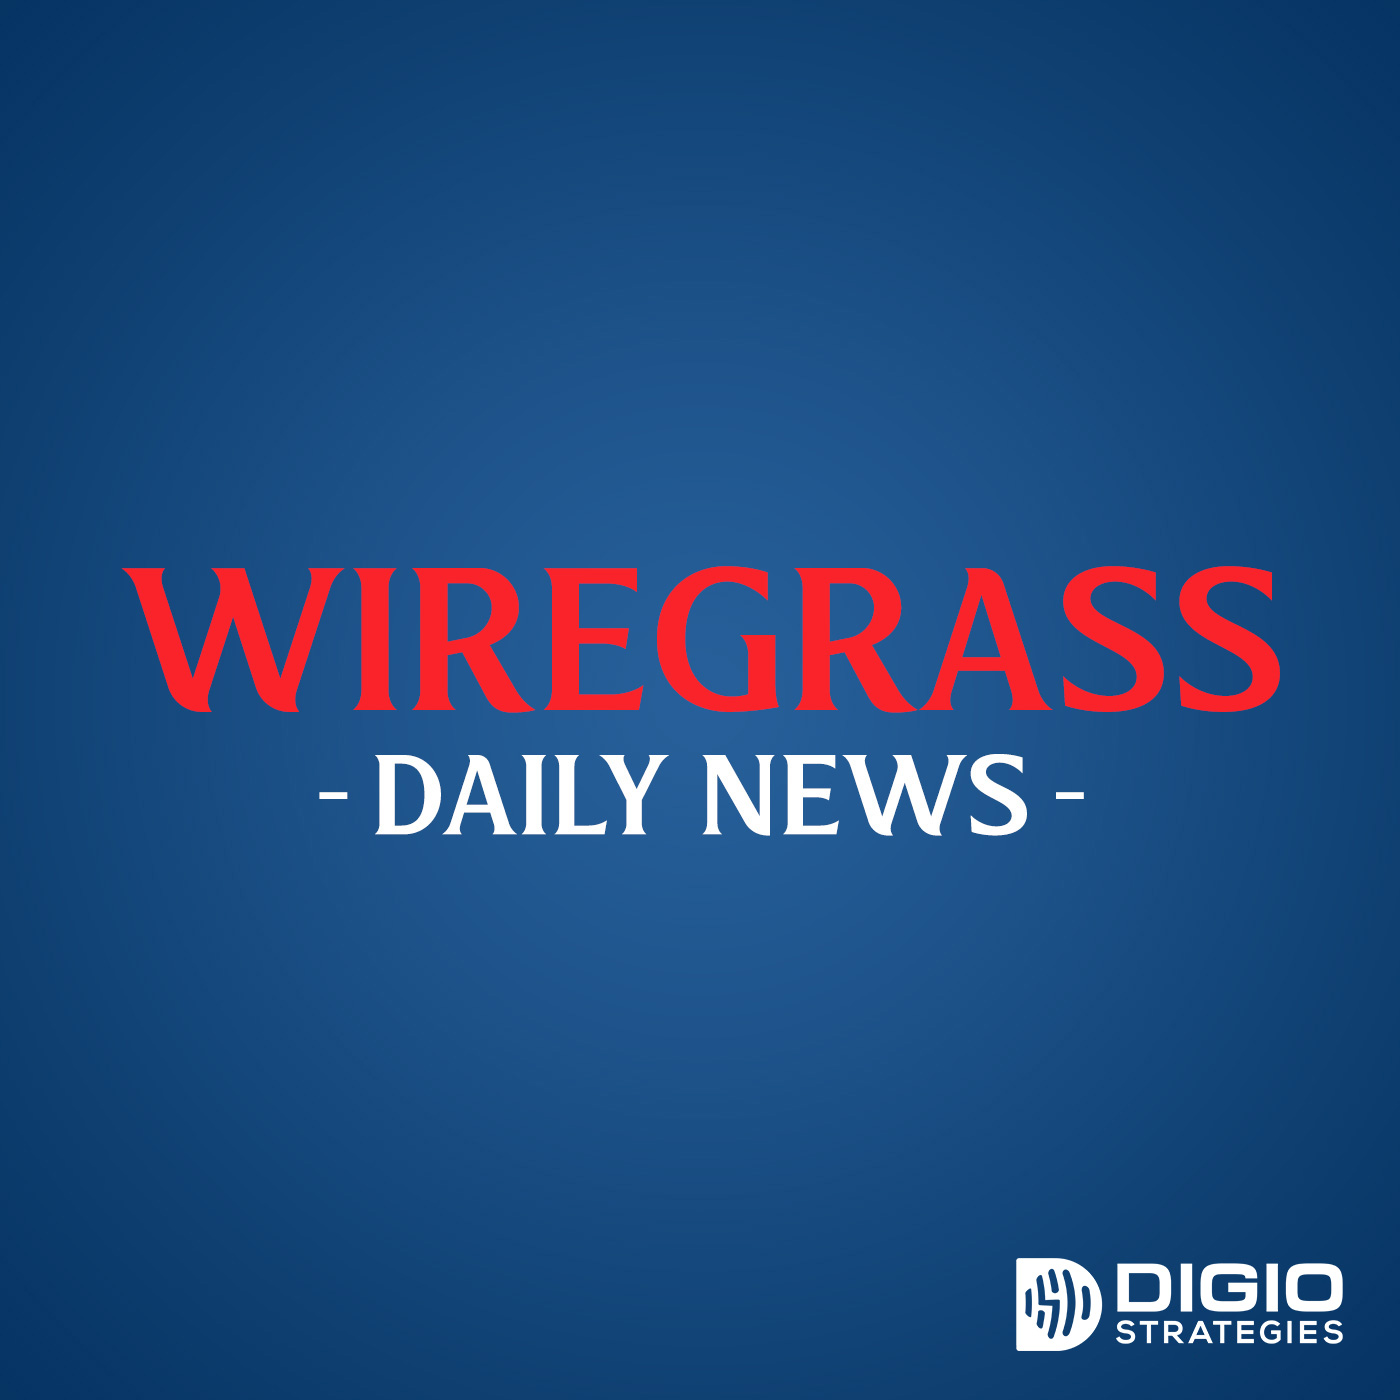 Wiregrass Daily News